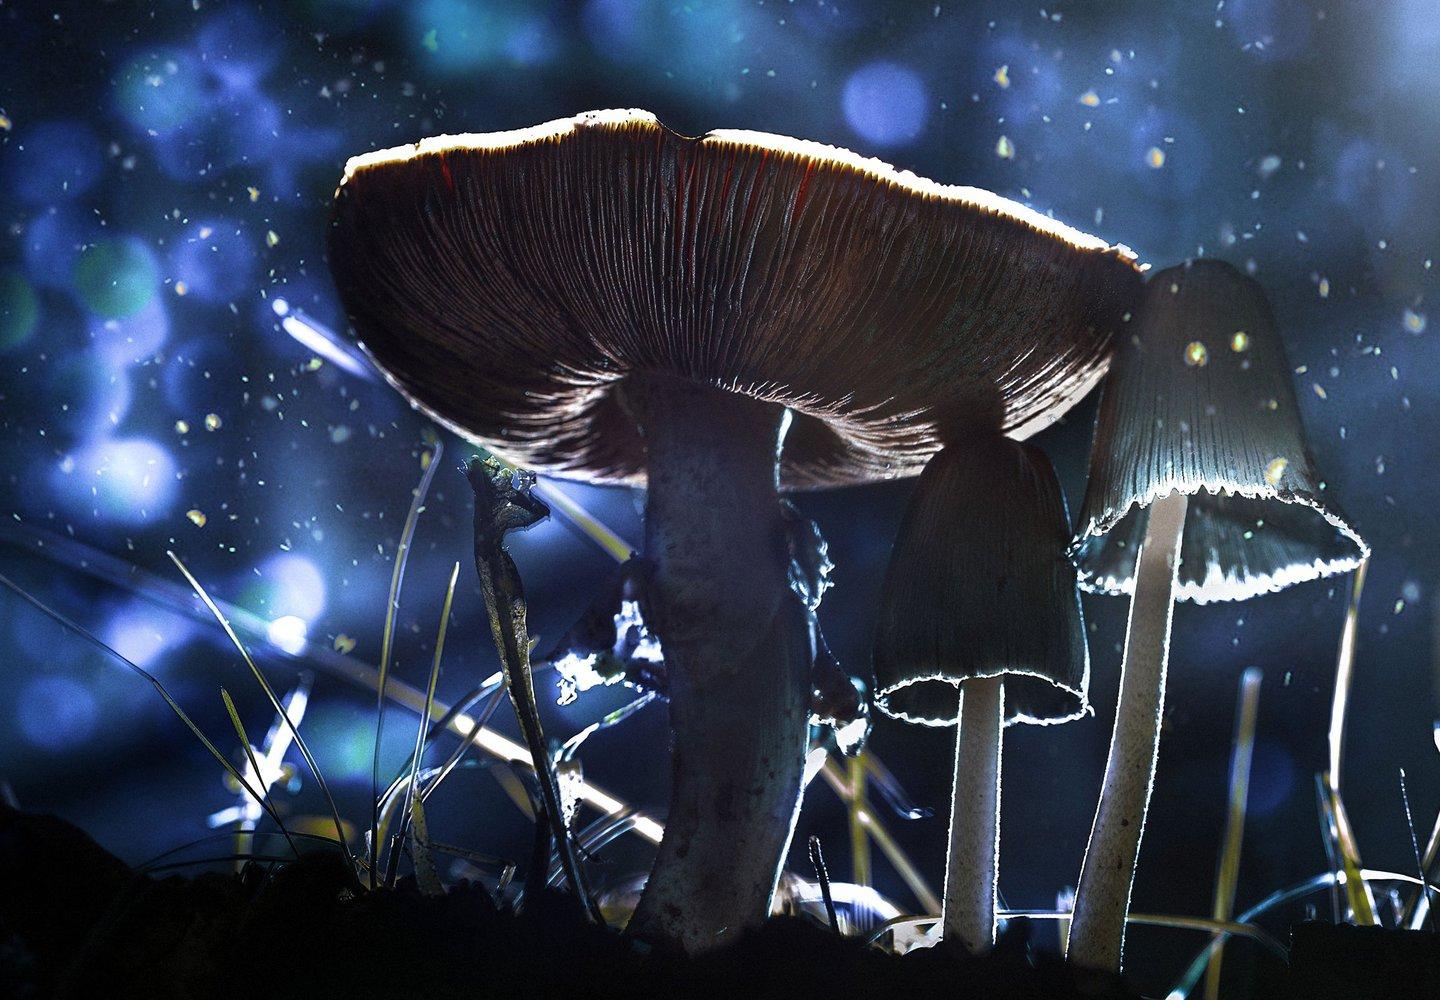 Chernobyl mushrooms